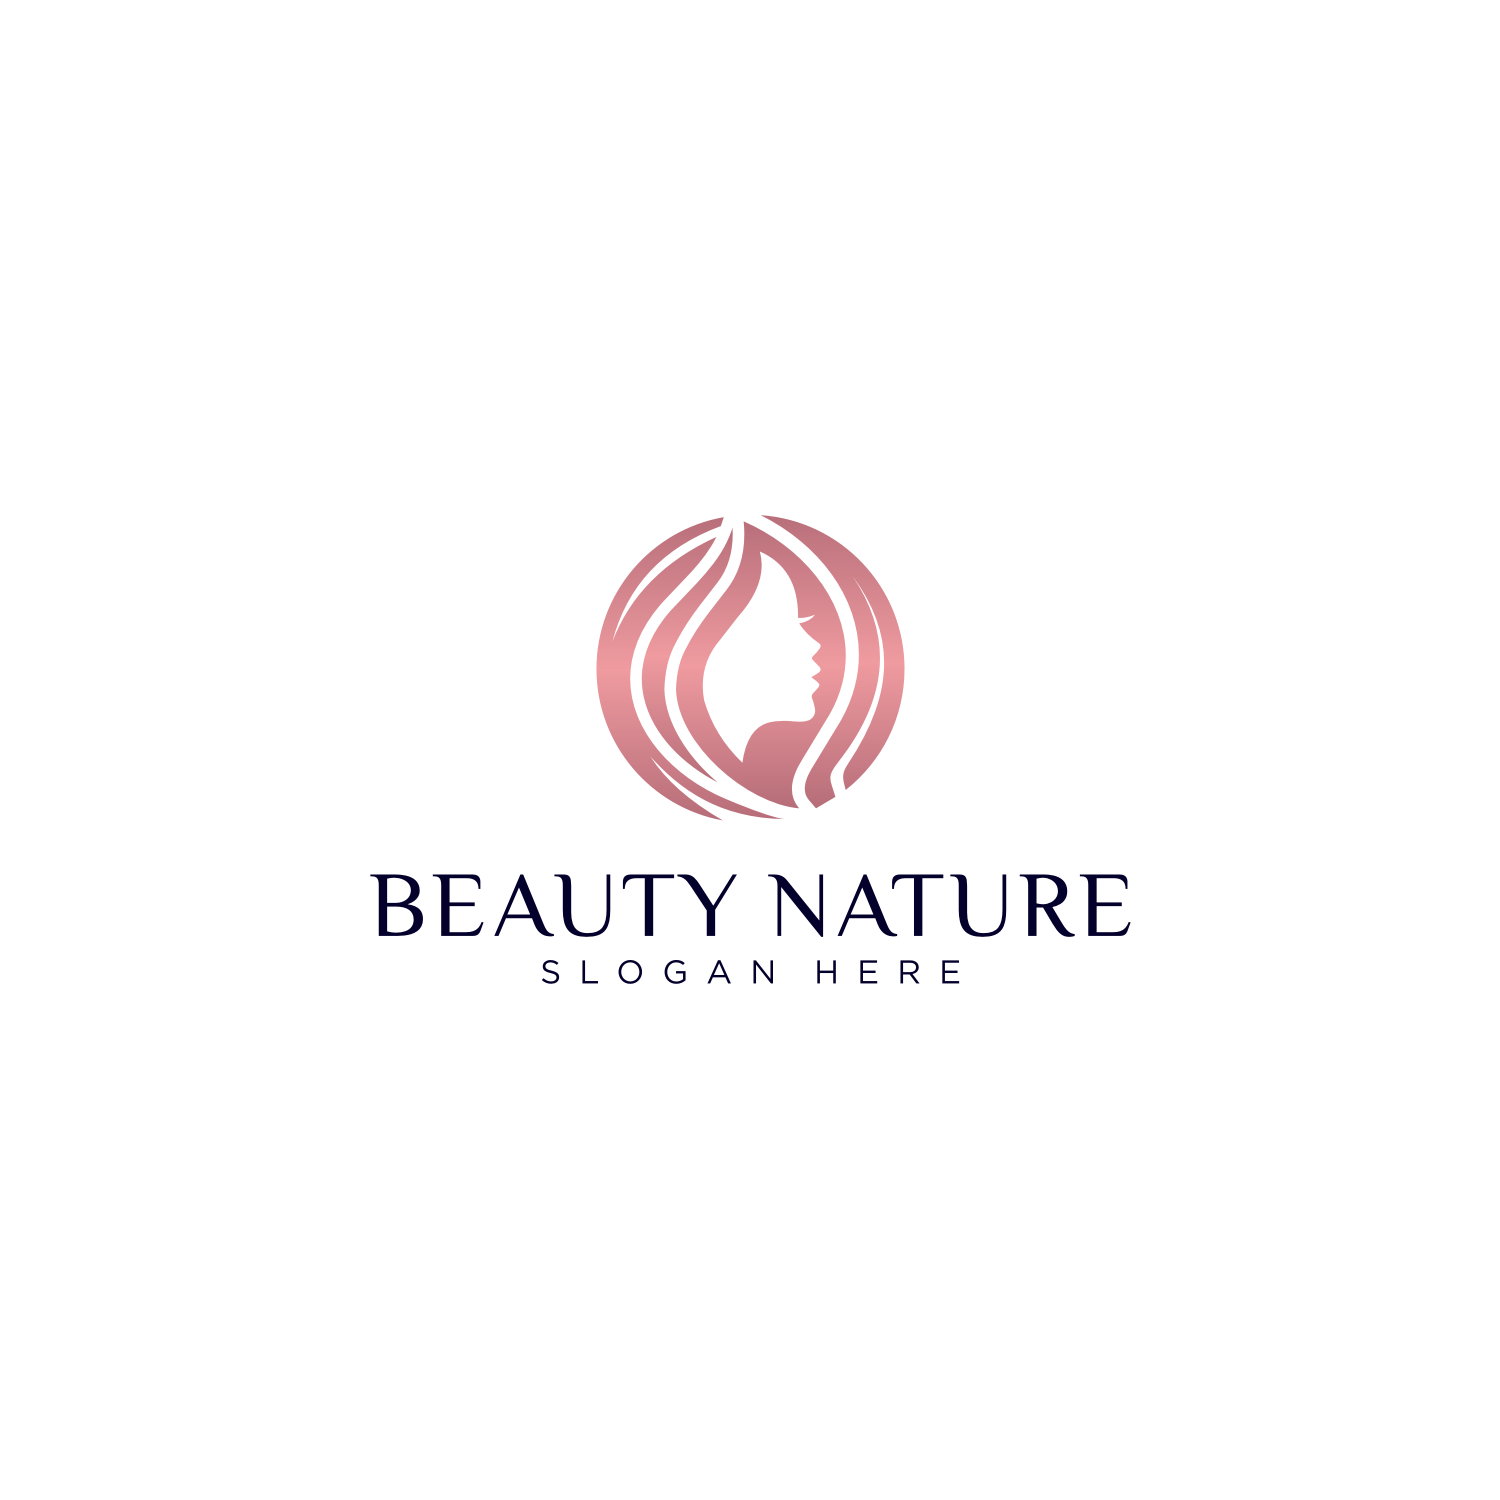 Women Face Beauty Logo Vector Design cover image.